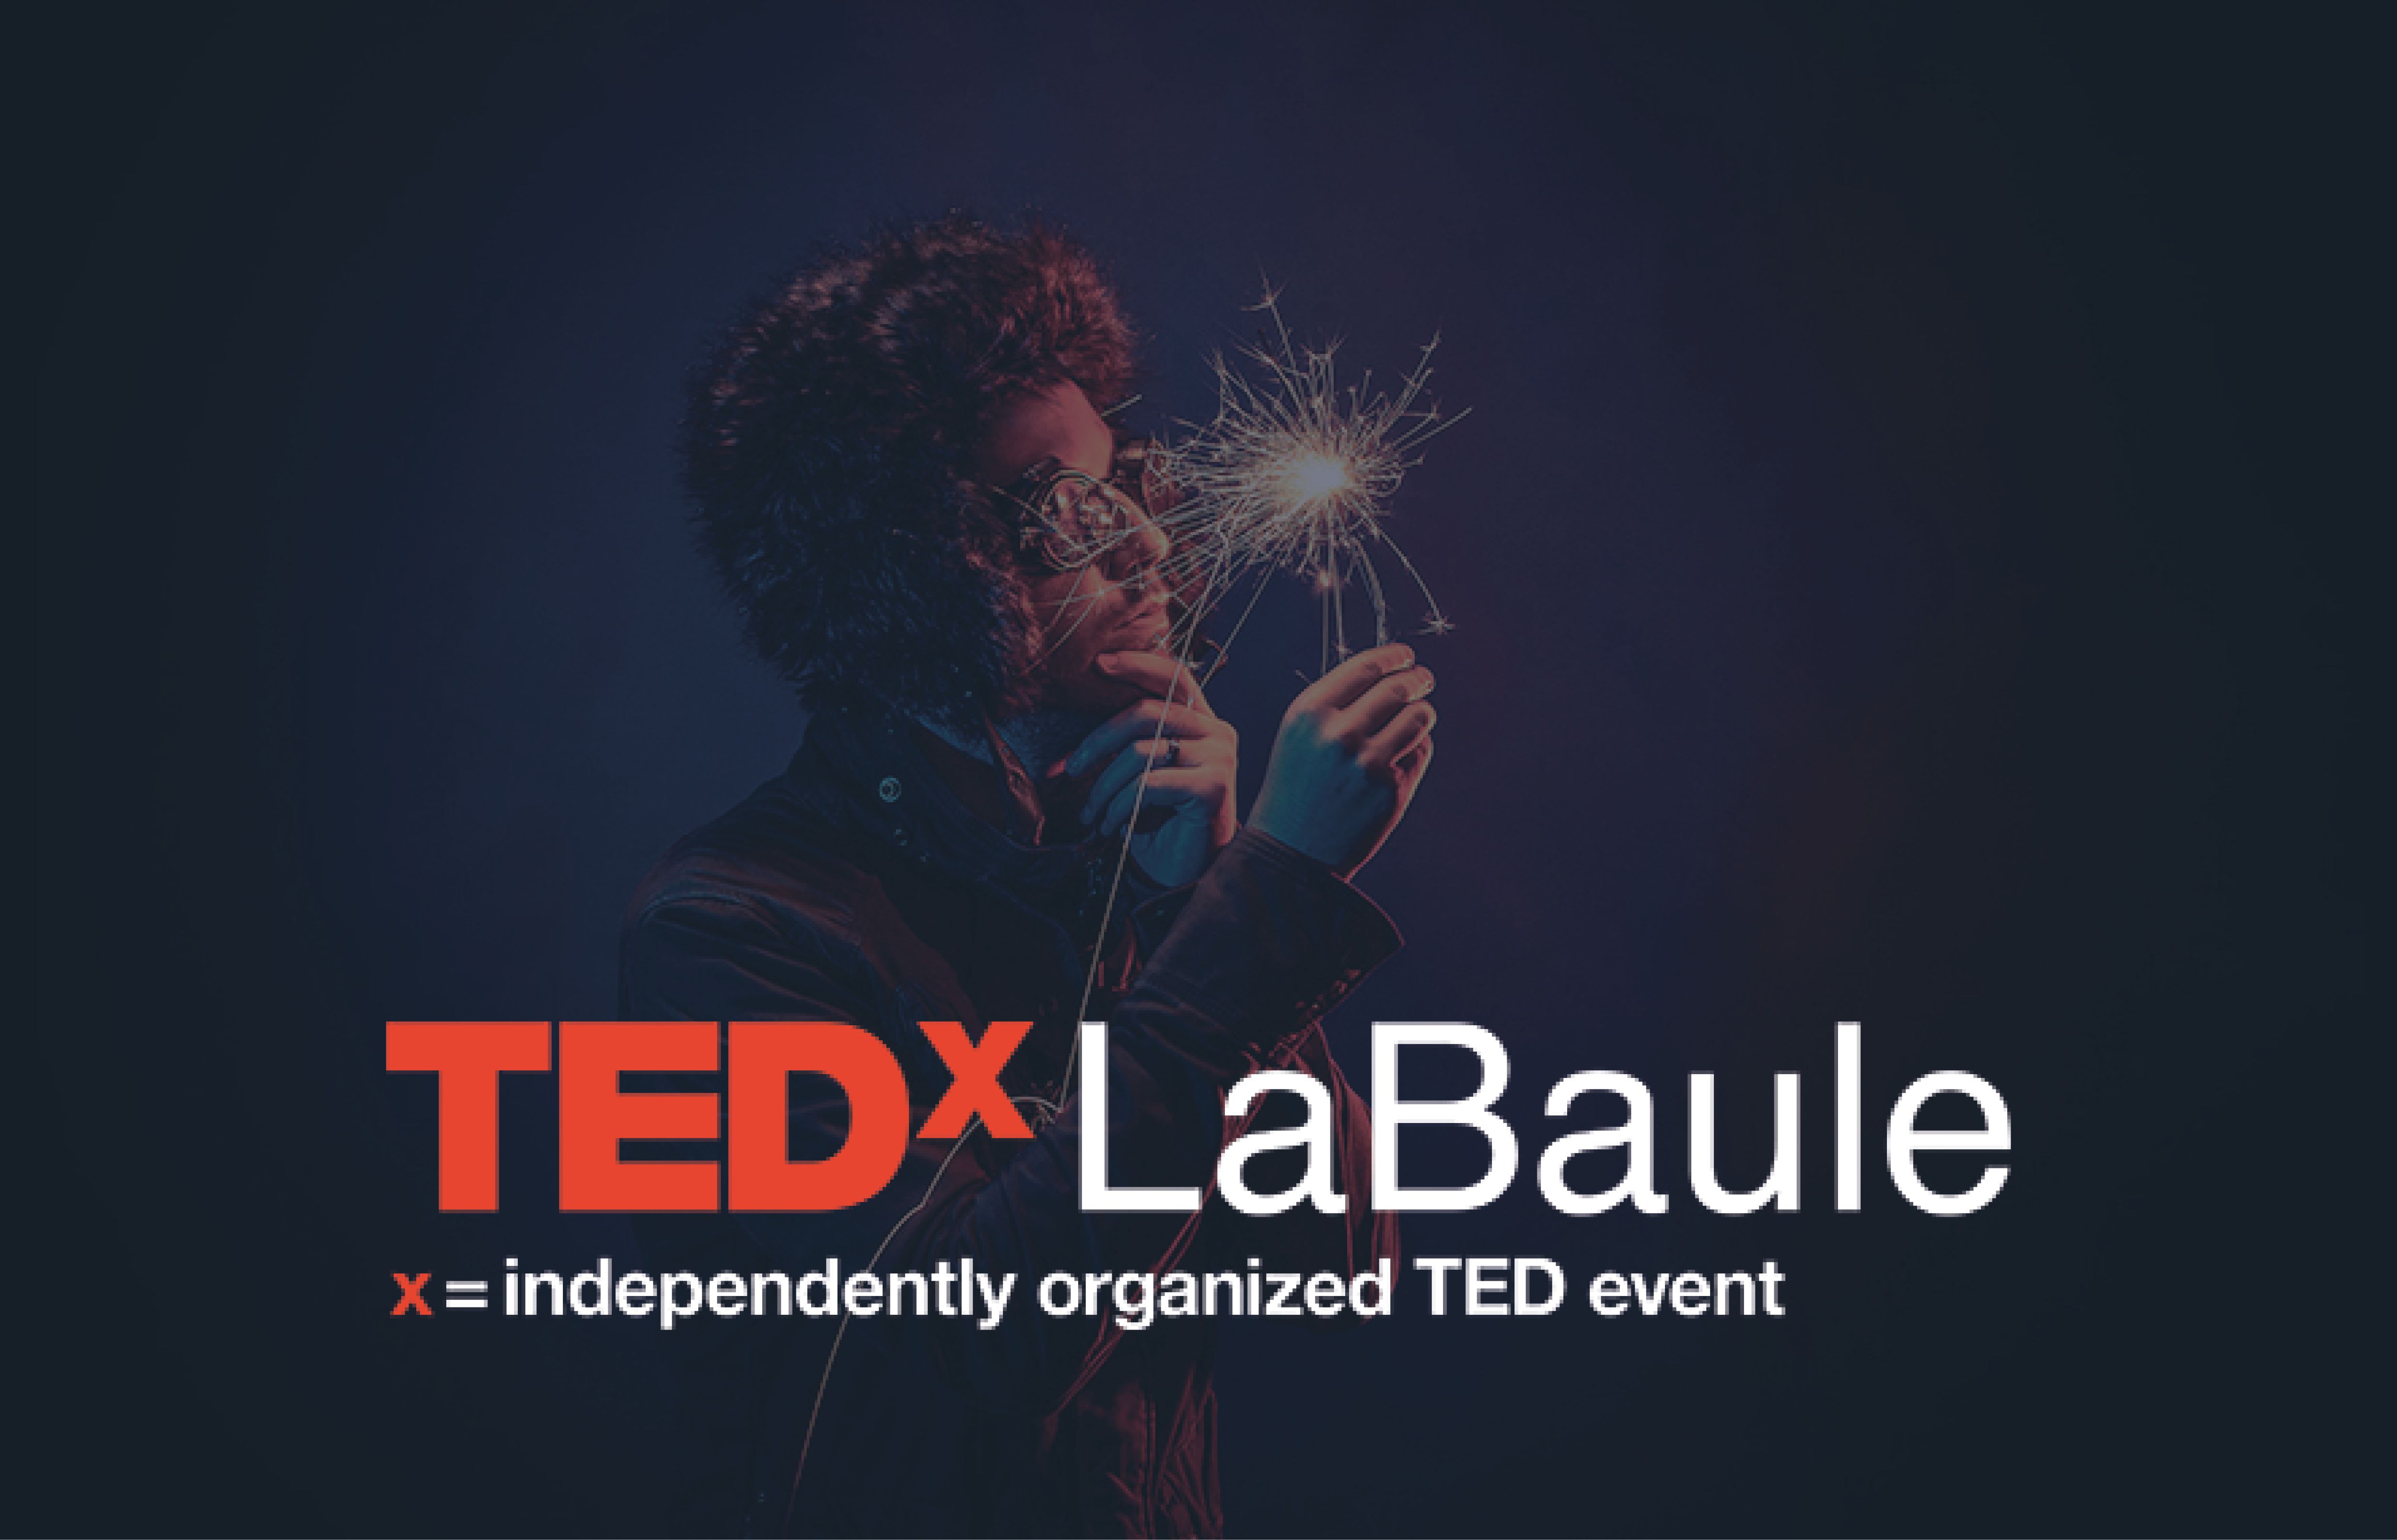 TEDx La Baule revient au Palais des Congrès Atlantia !